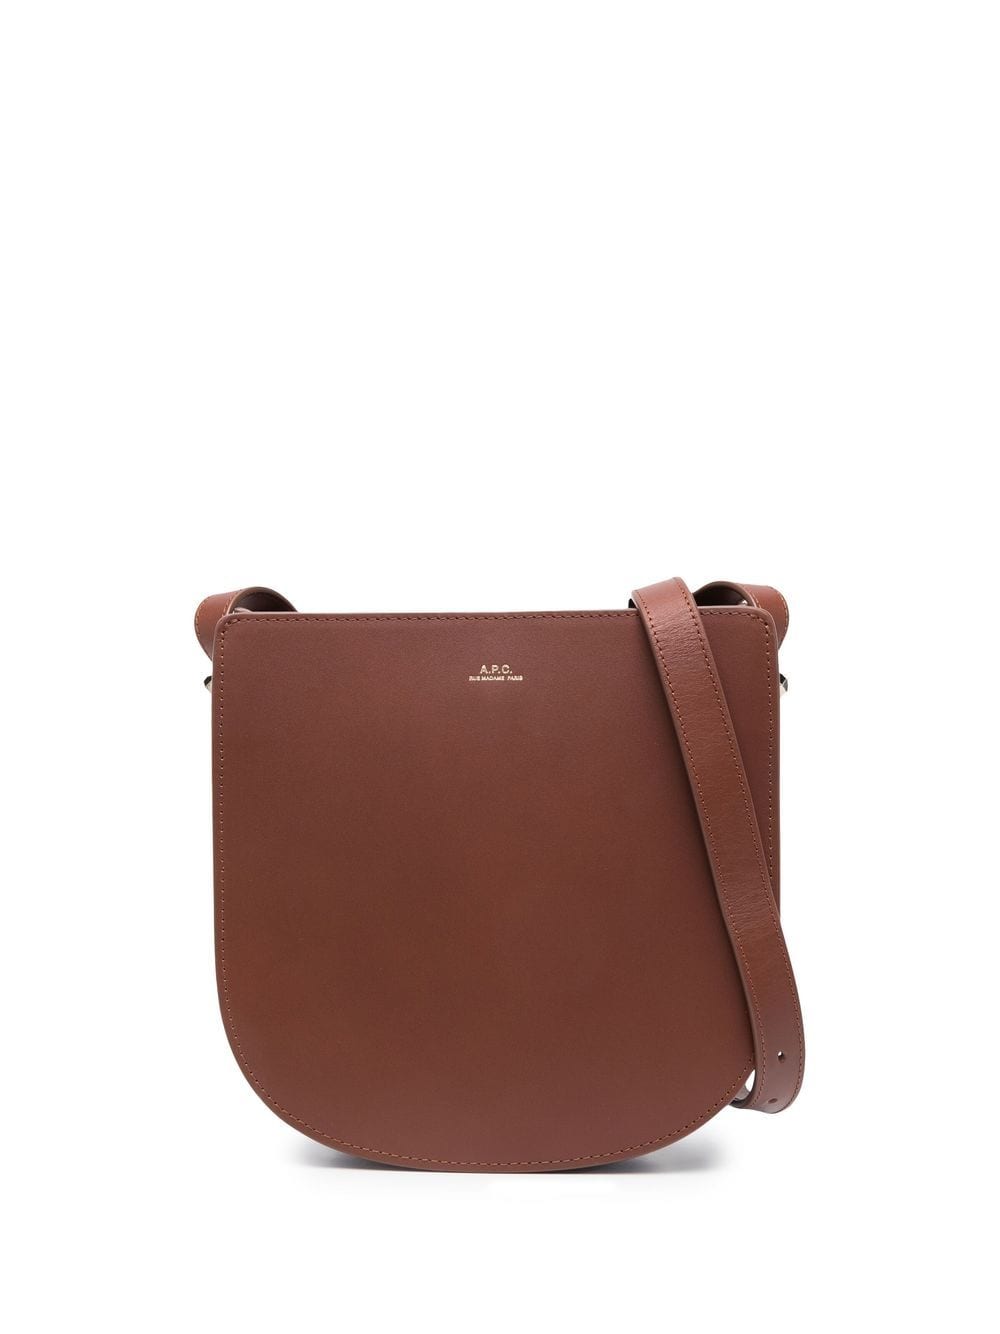 A.P.C. Geneve leather shoulder bag - Brown von A.P.C.